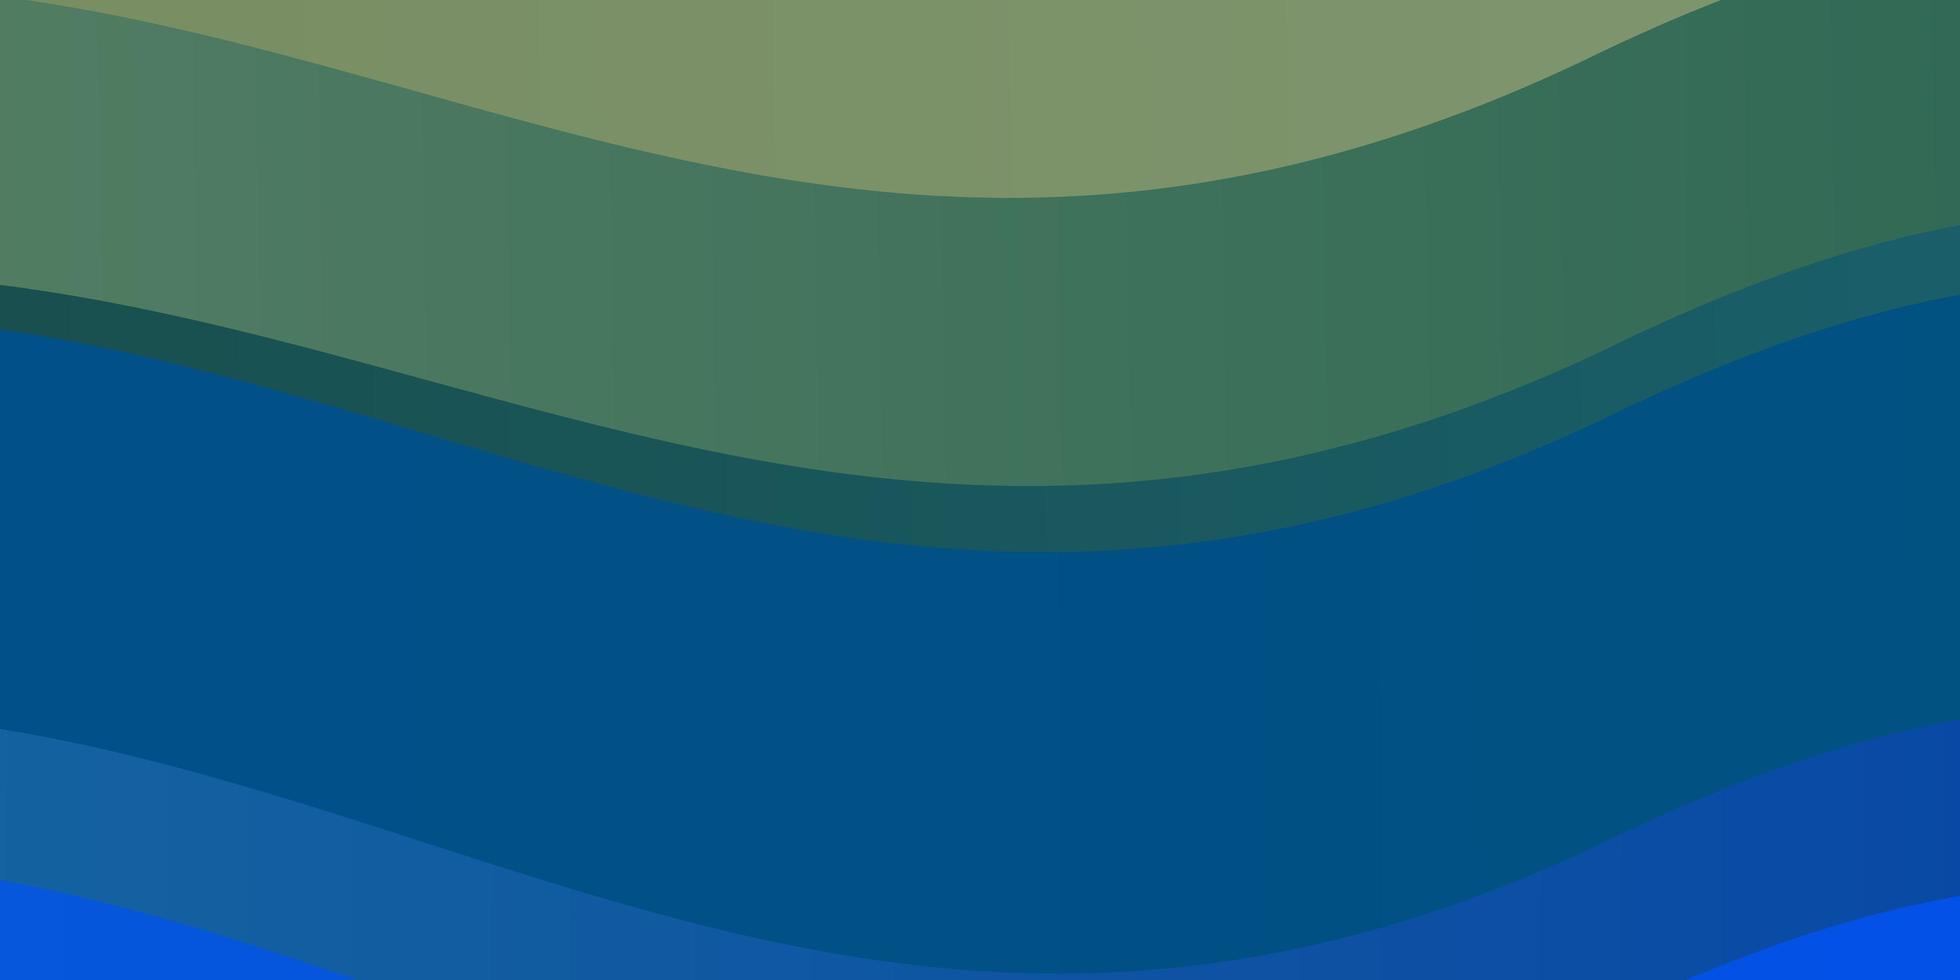 ljusblå, grön vektorbakgrund med sneda linjer. färgglada geometriska prov med lutningskurvor. mönster för annonser, reklam. vektor